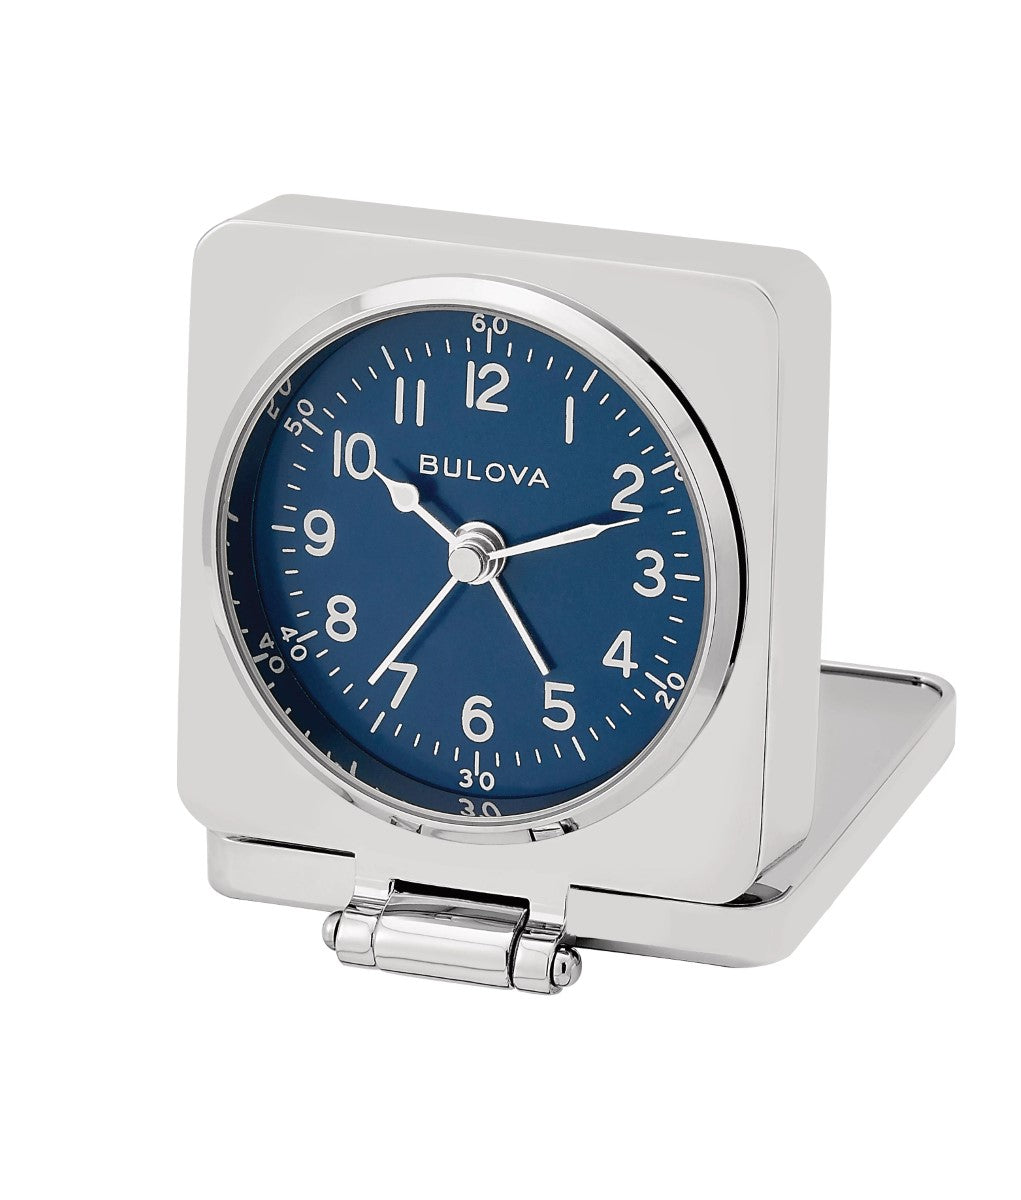 Bulova B1882 Travel Hack Flip Cover Tabletop Alarm Clock